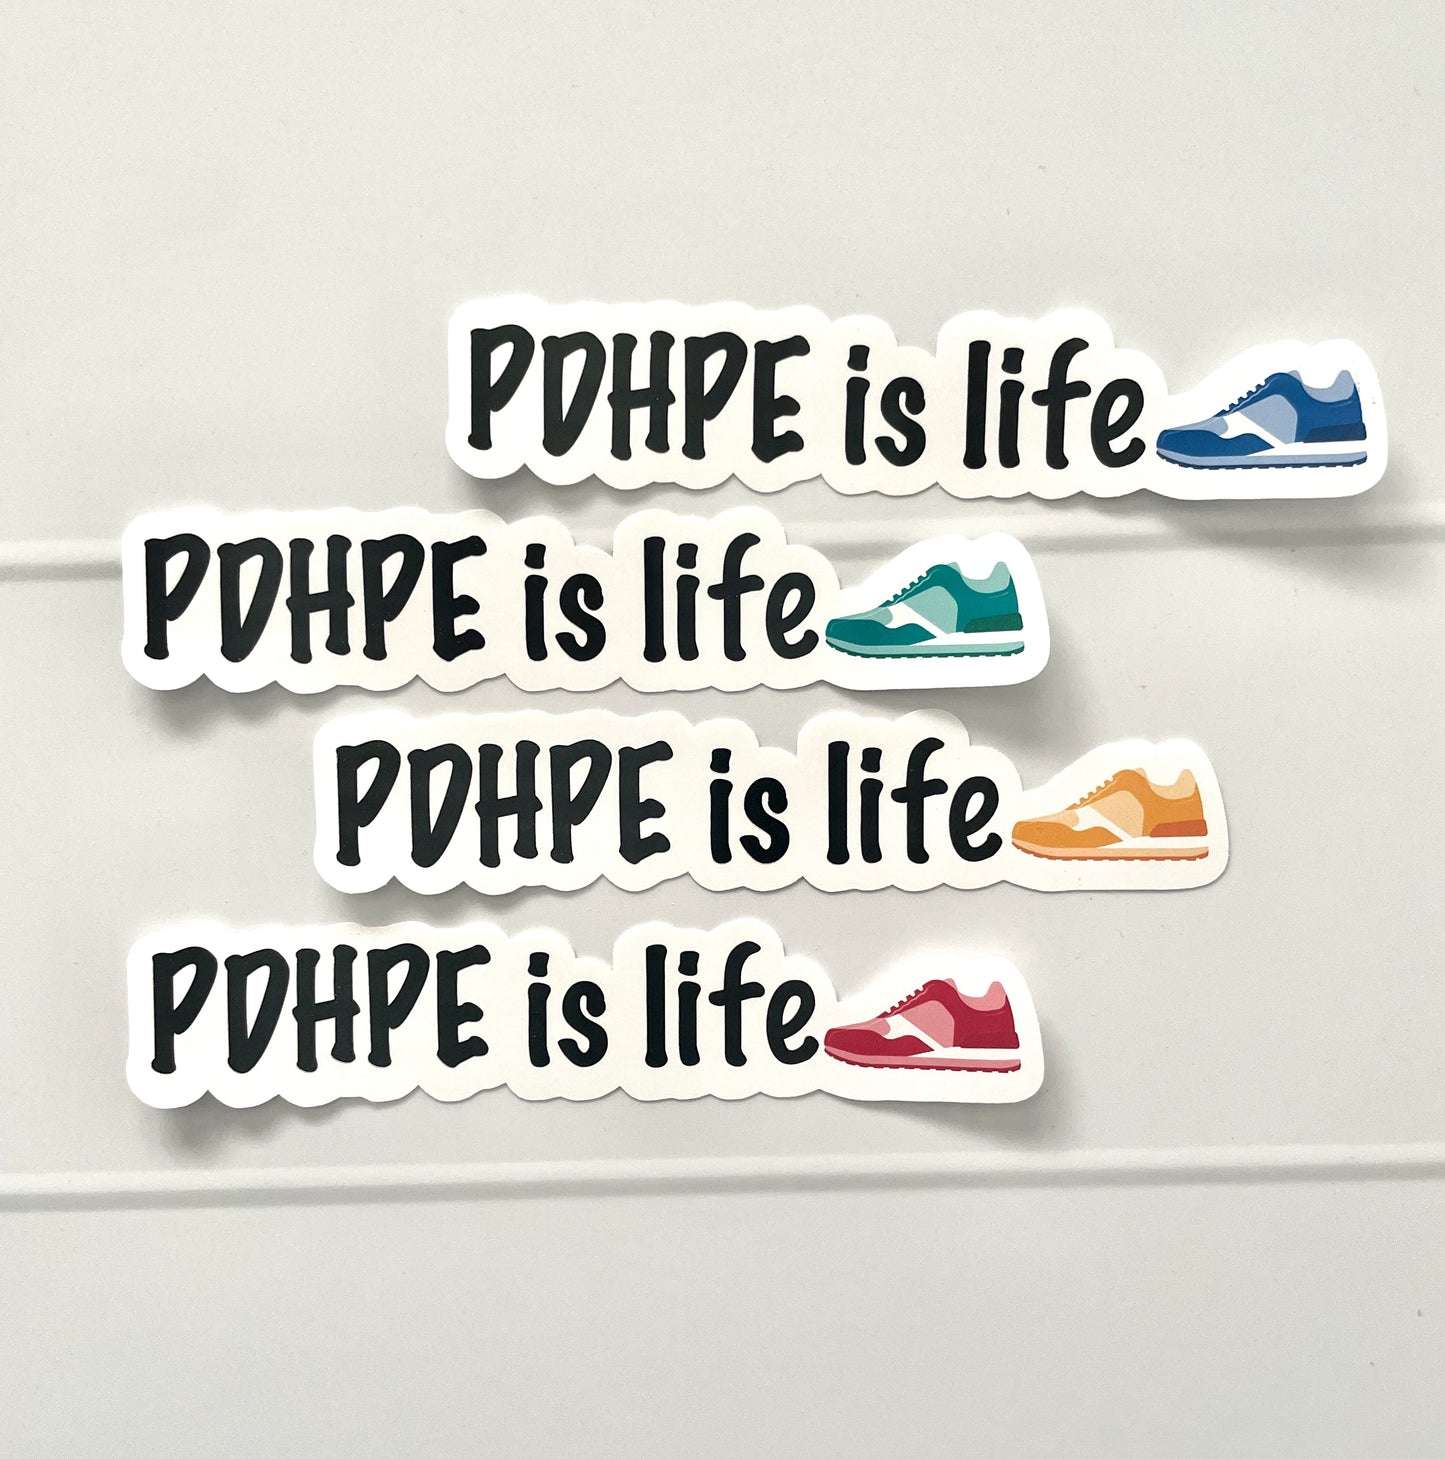 PDHPE is Life Die Cut Sticker